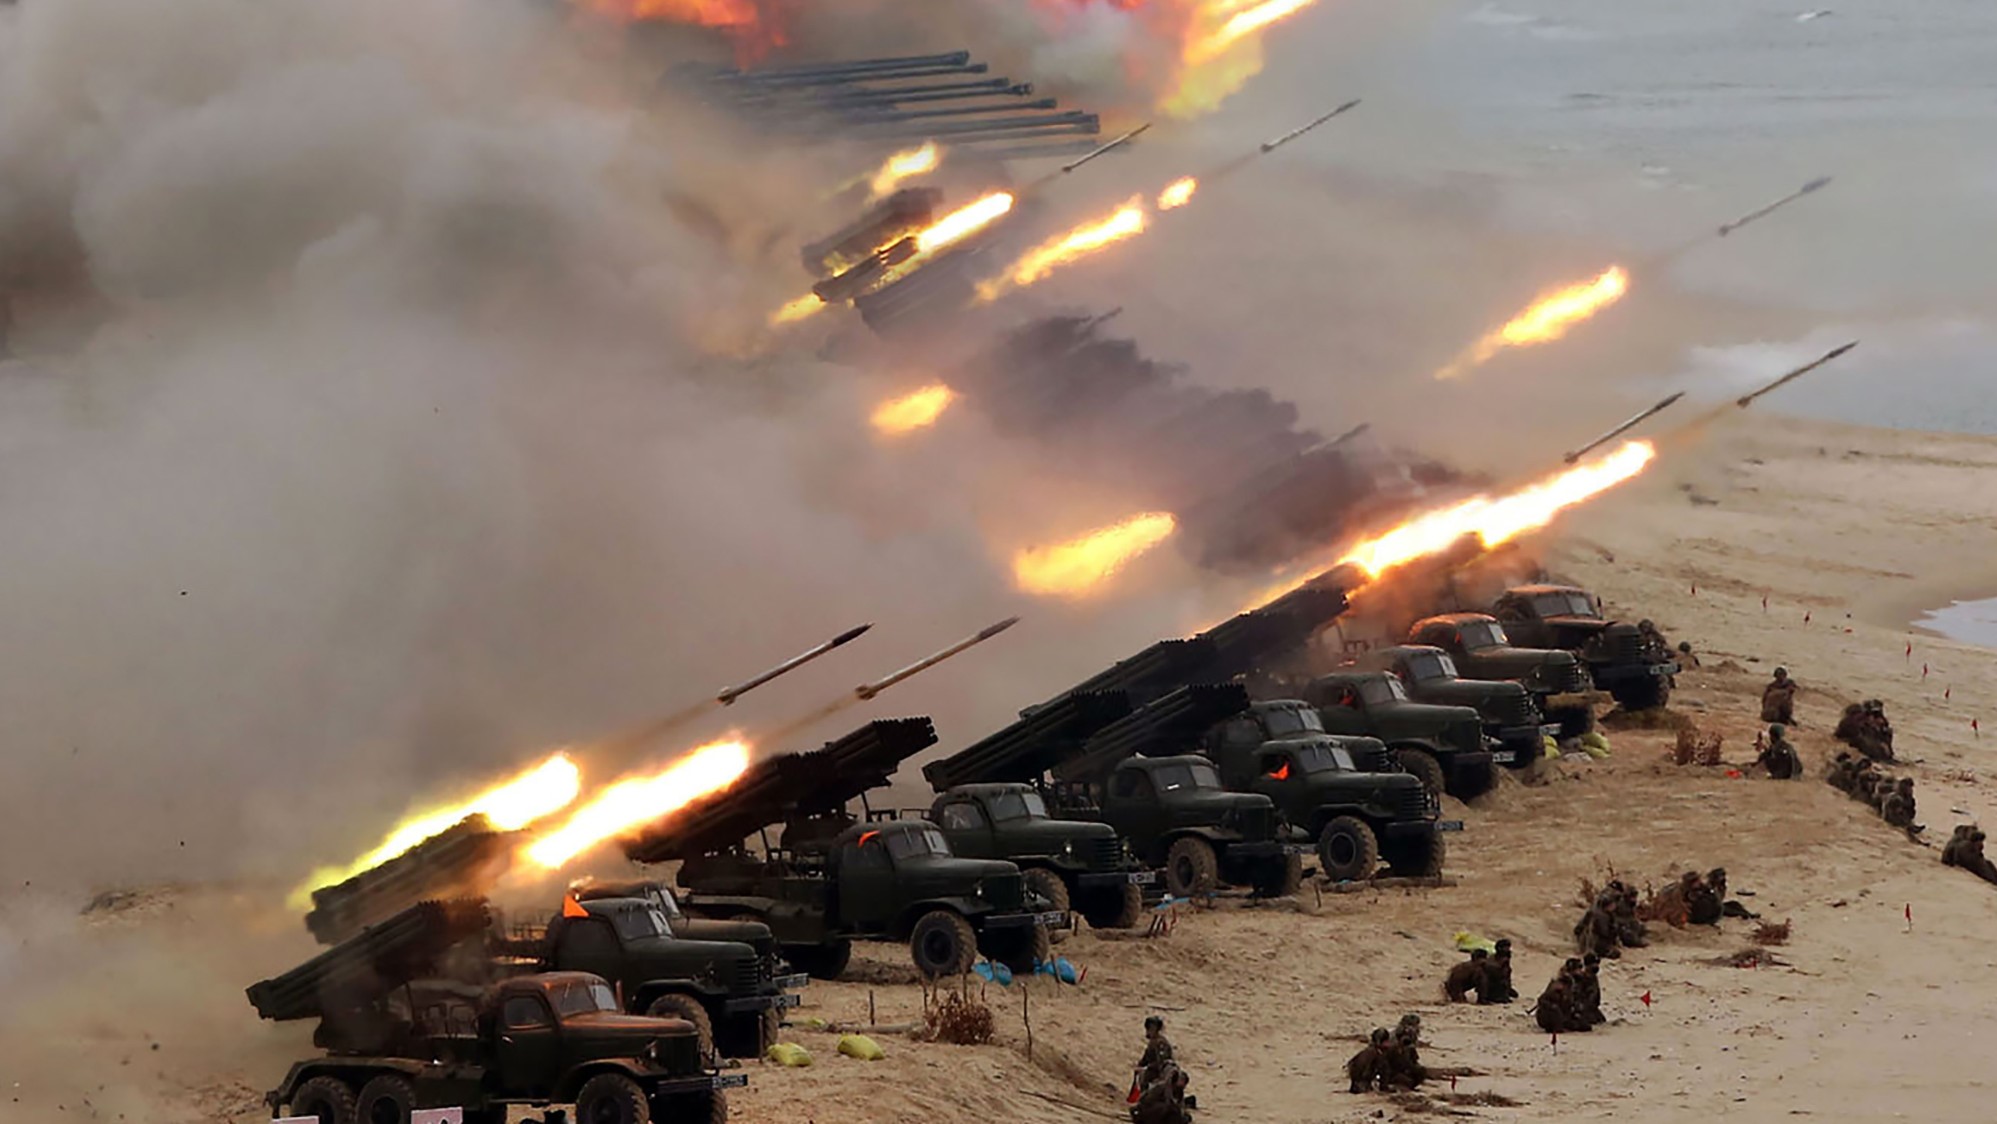 Péninsule coréenne : Tirs groupés de missiles américano-coréens